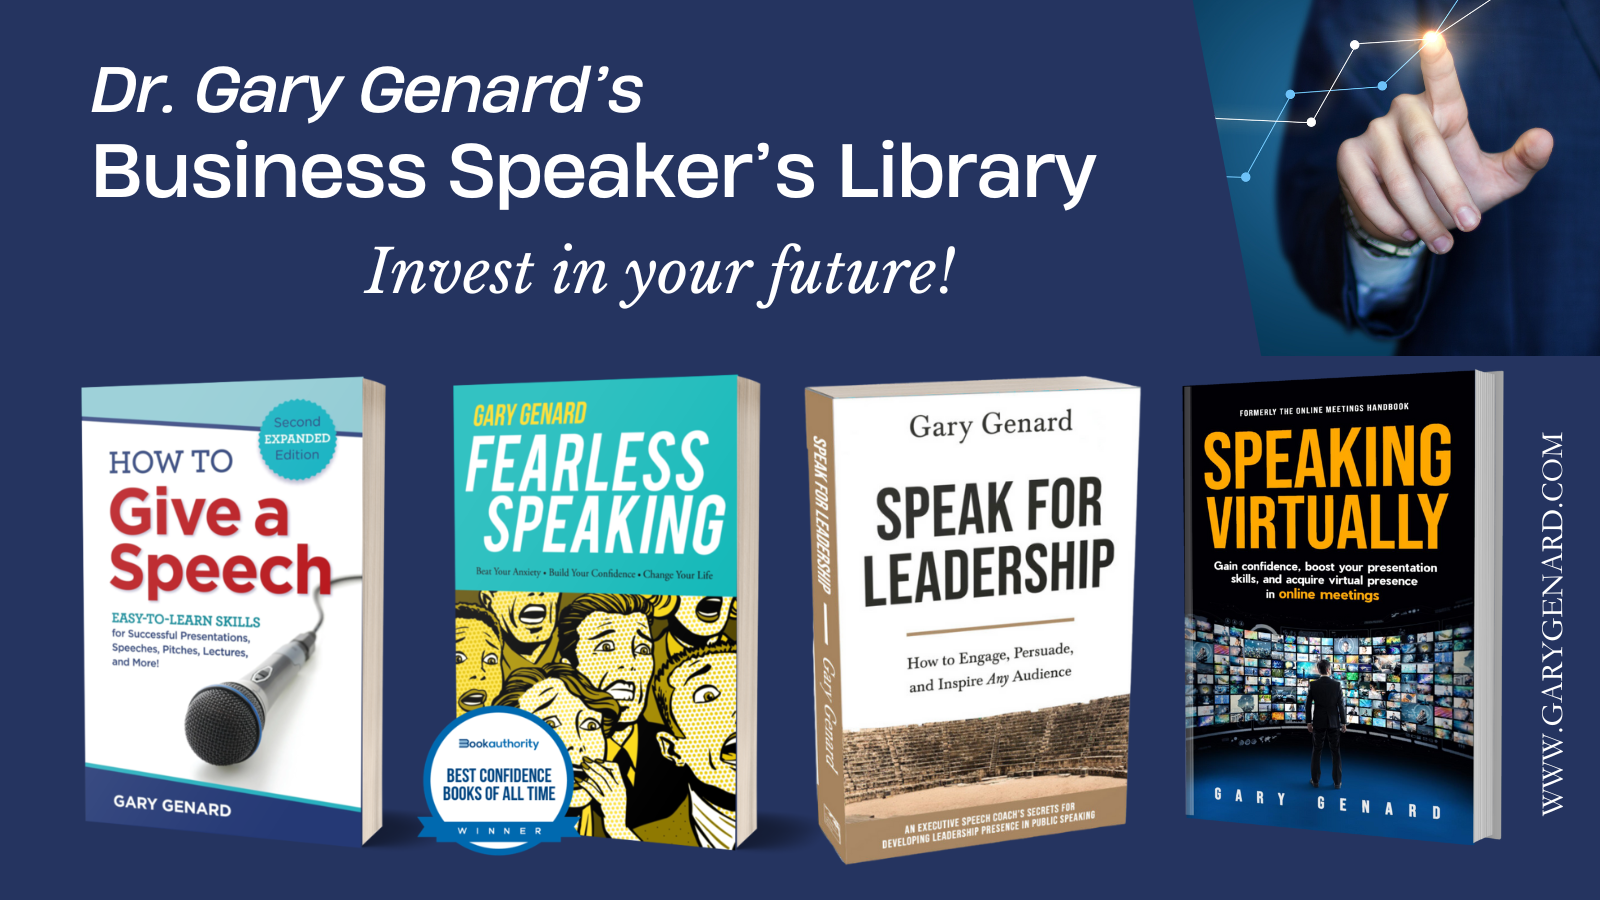 Dr. Gary Genard's Business Speaker's Library for effective public speaking!